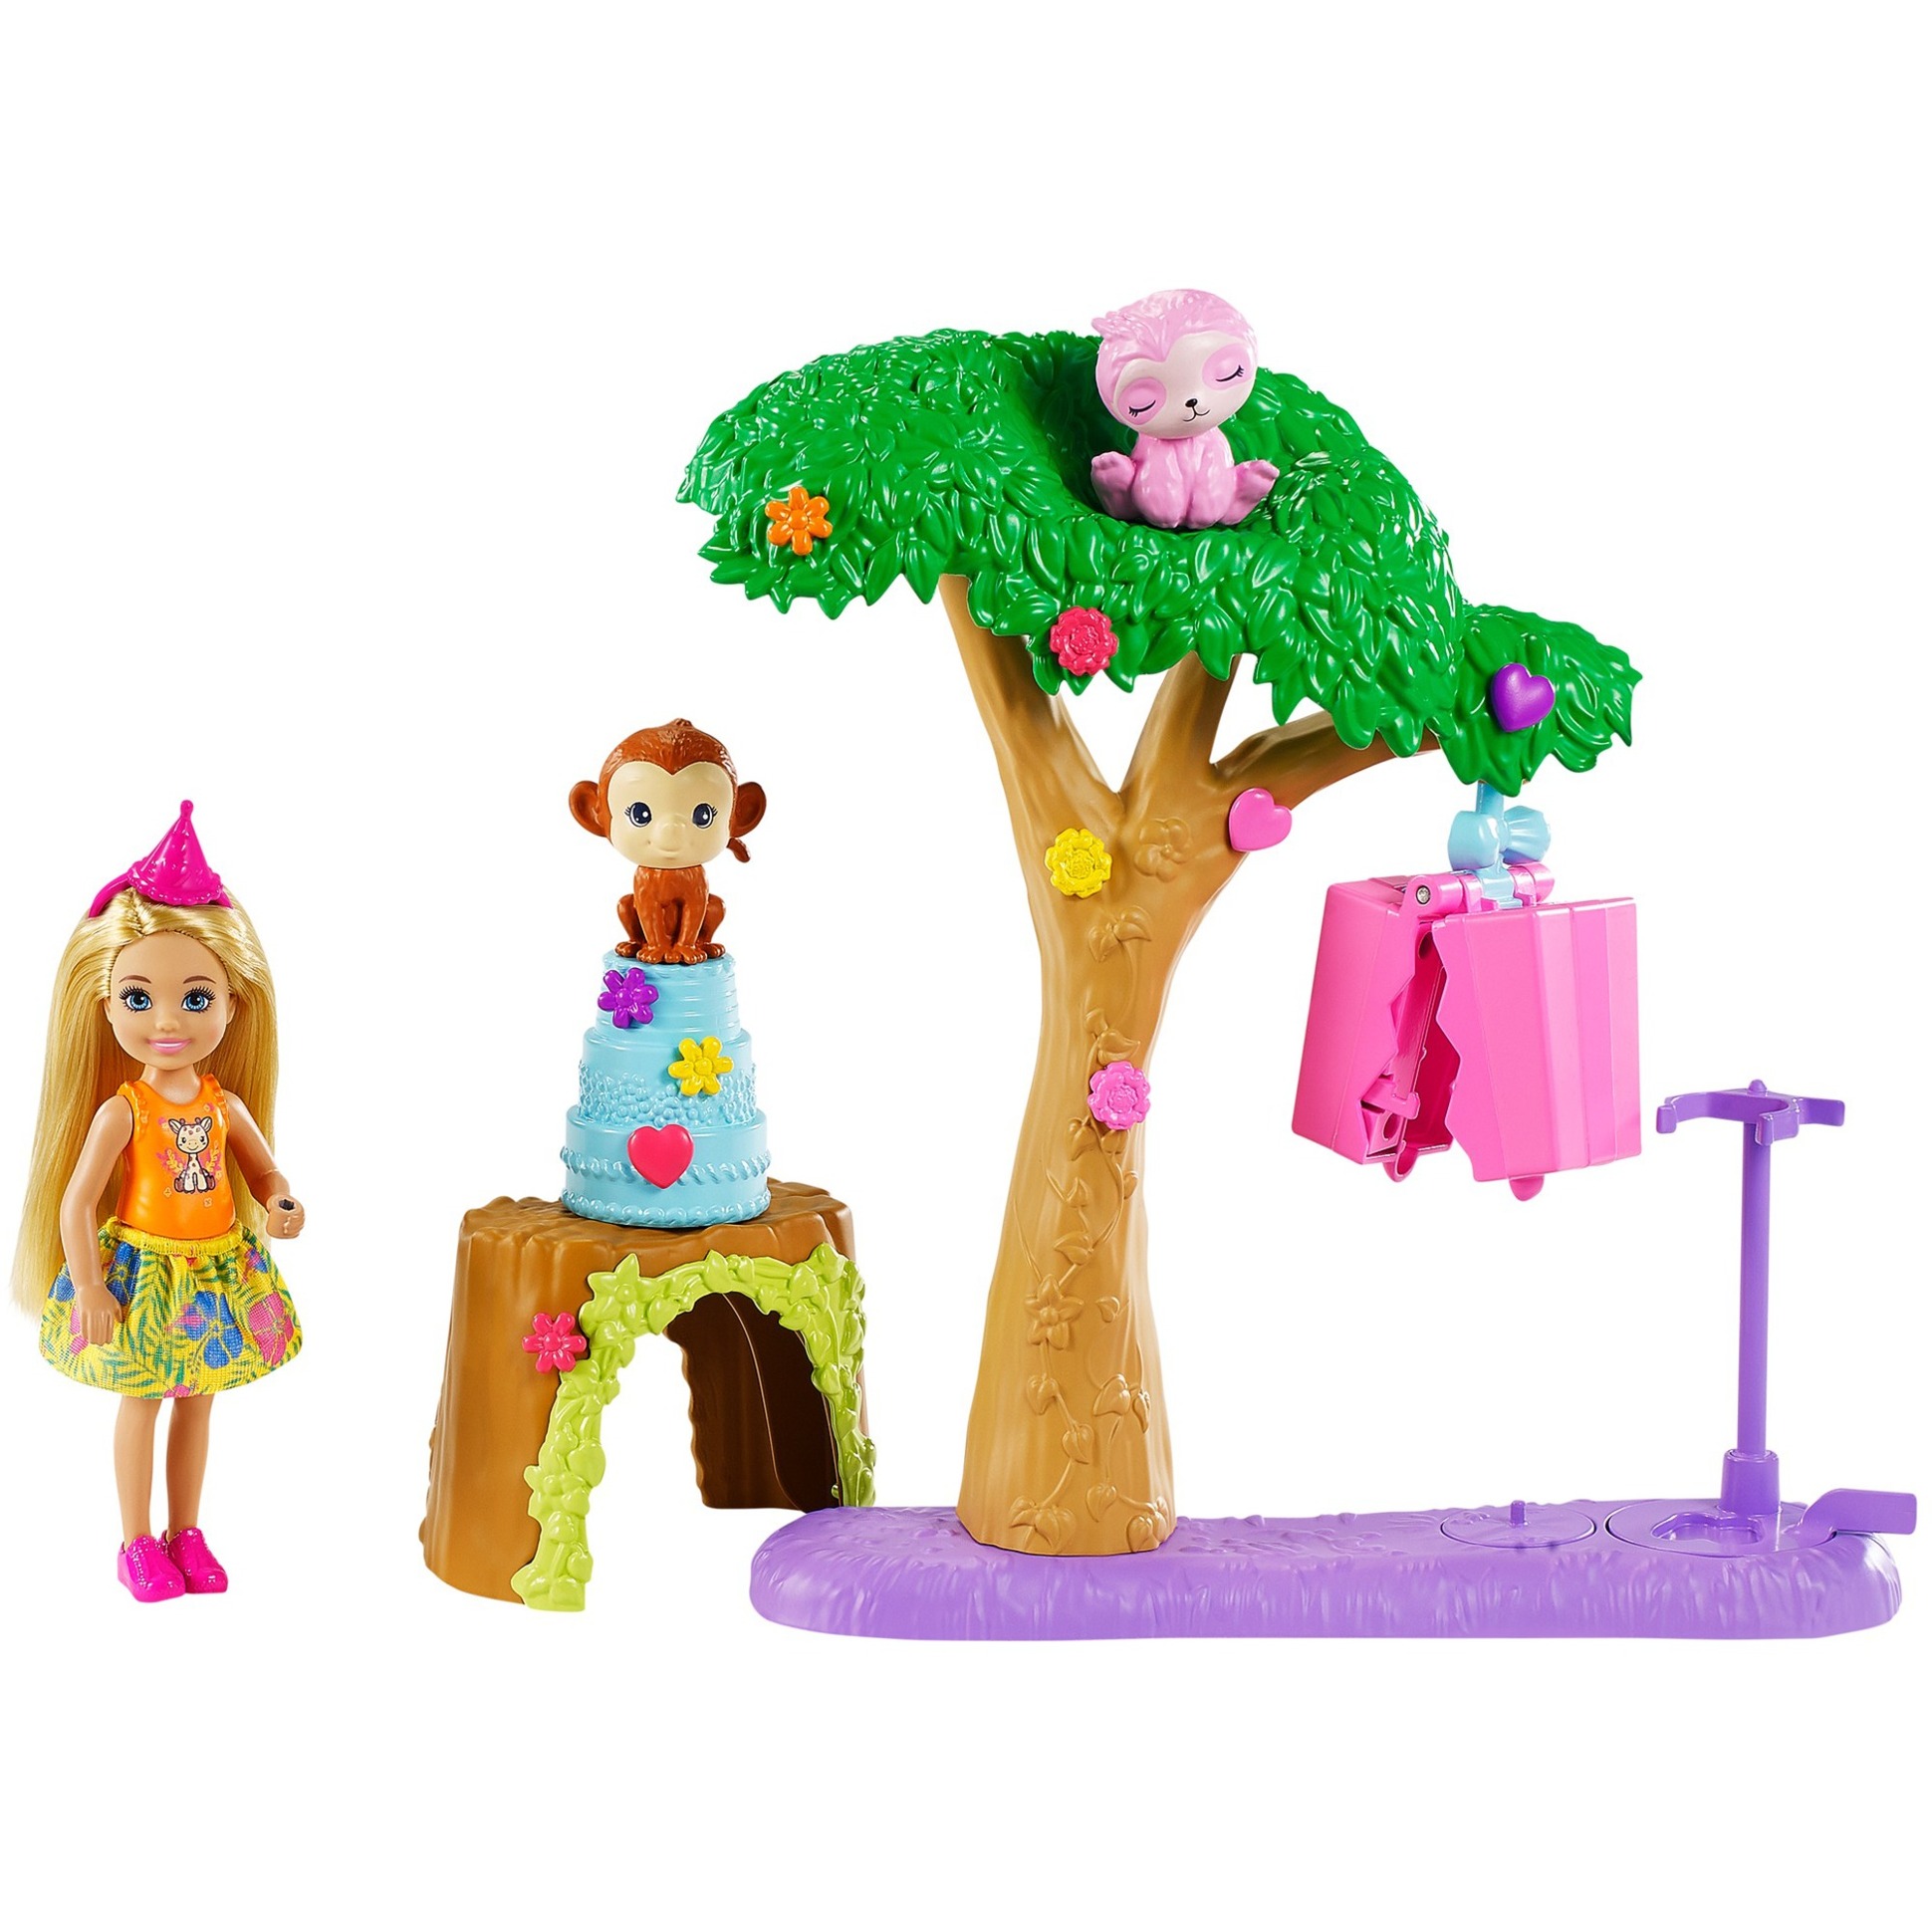 Image of Alternate - Barbie und Chelsea "Dschungelabenteuer" Pinataspaß-Spielset, Puppe online einkaufen bei Alternate